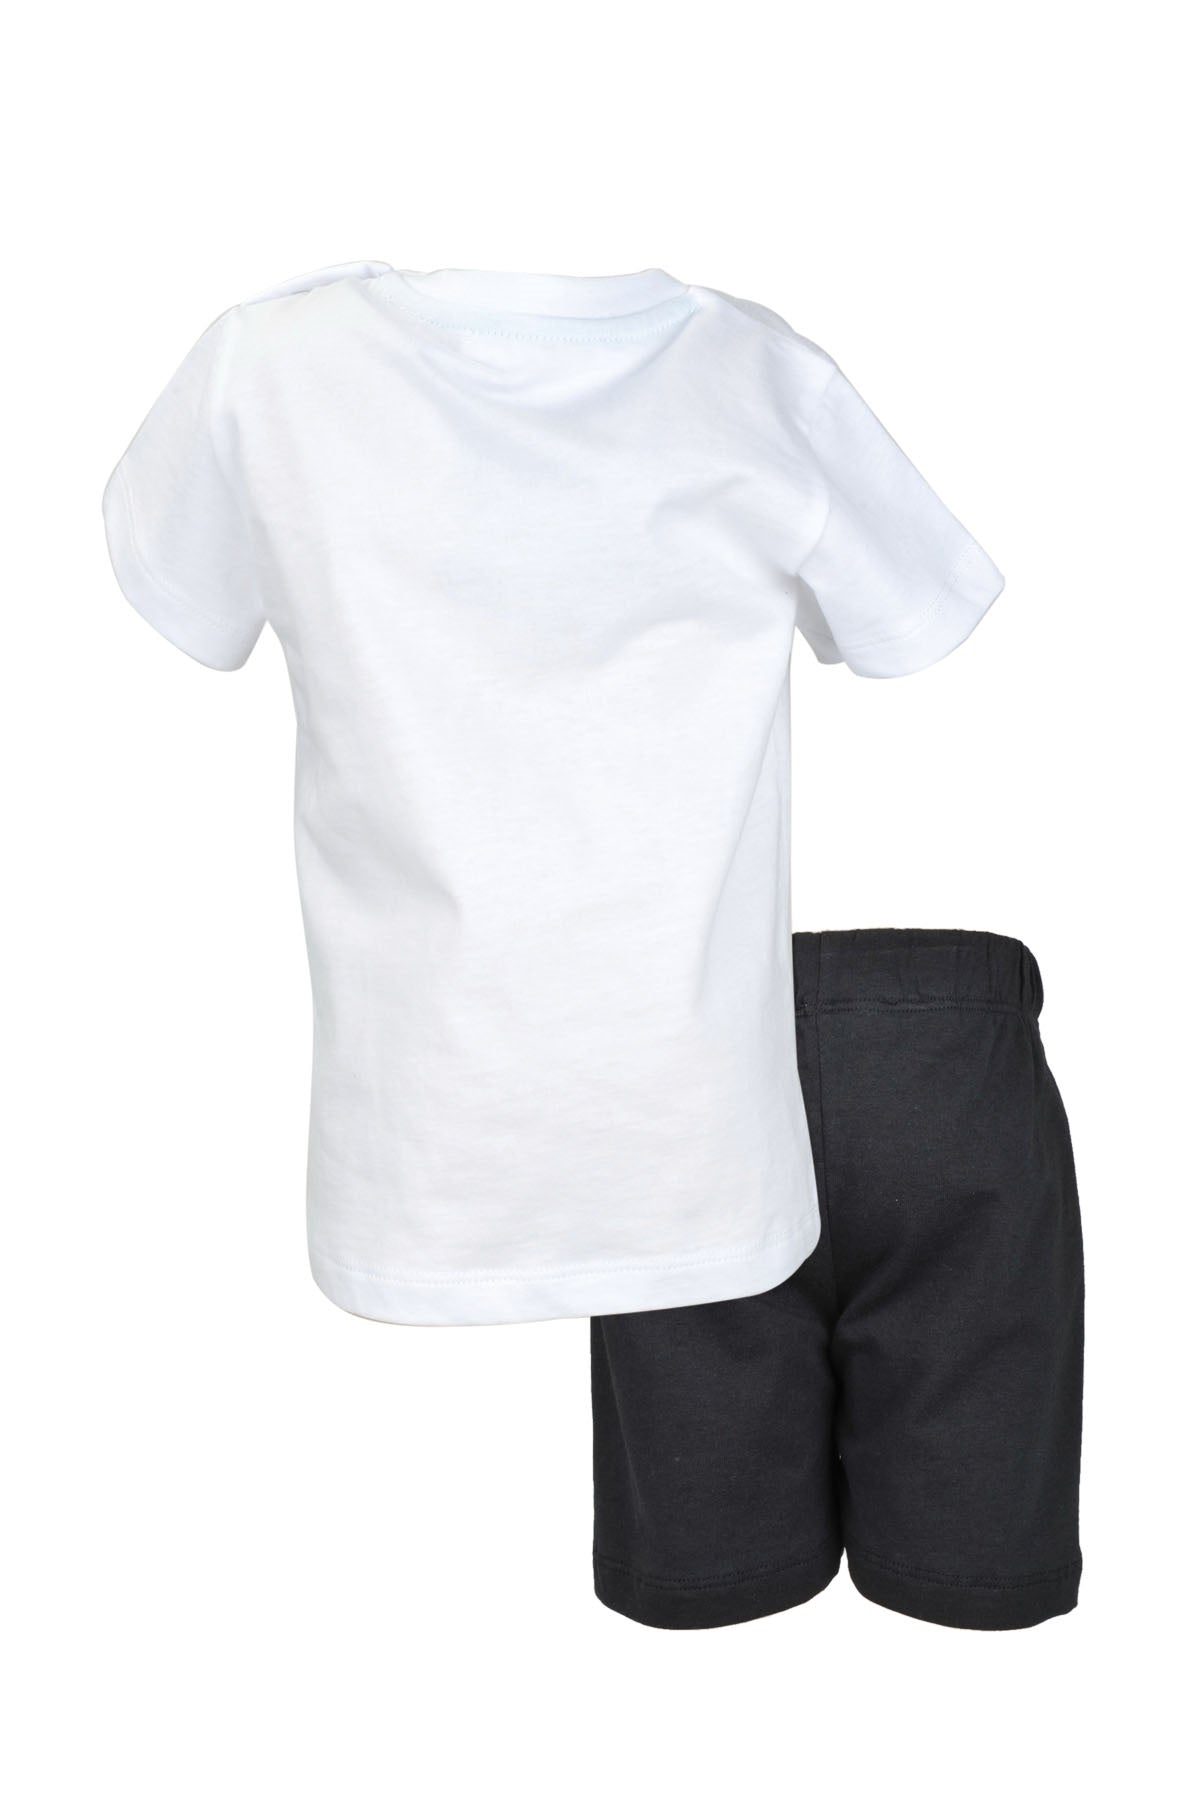 Erkek Bebek Beyaz Funny Monster T-Shirt ve Şort Takım (9ay-7yaş)-3